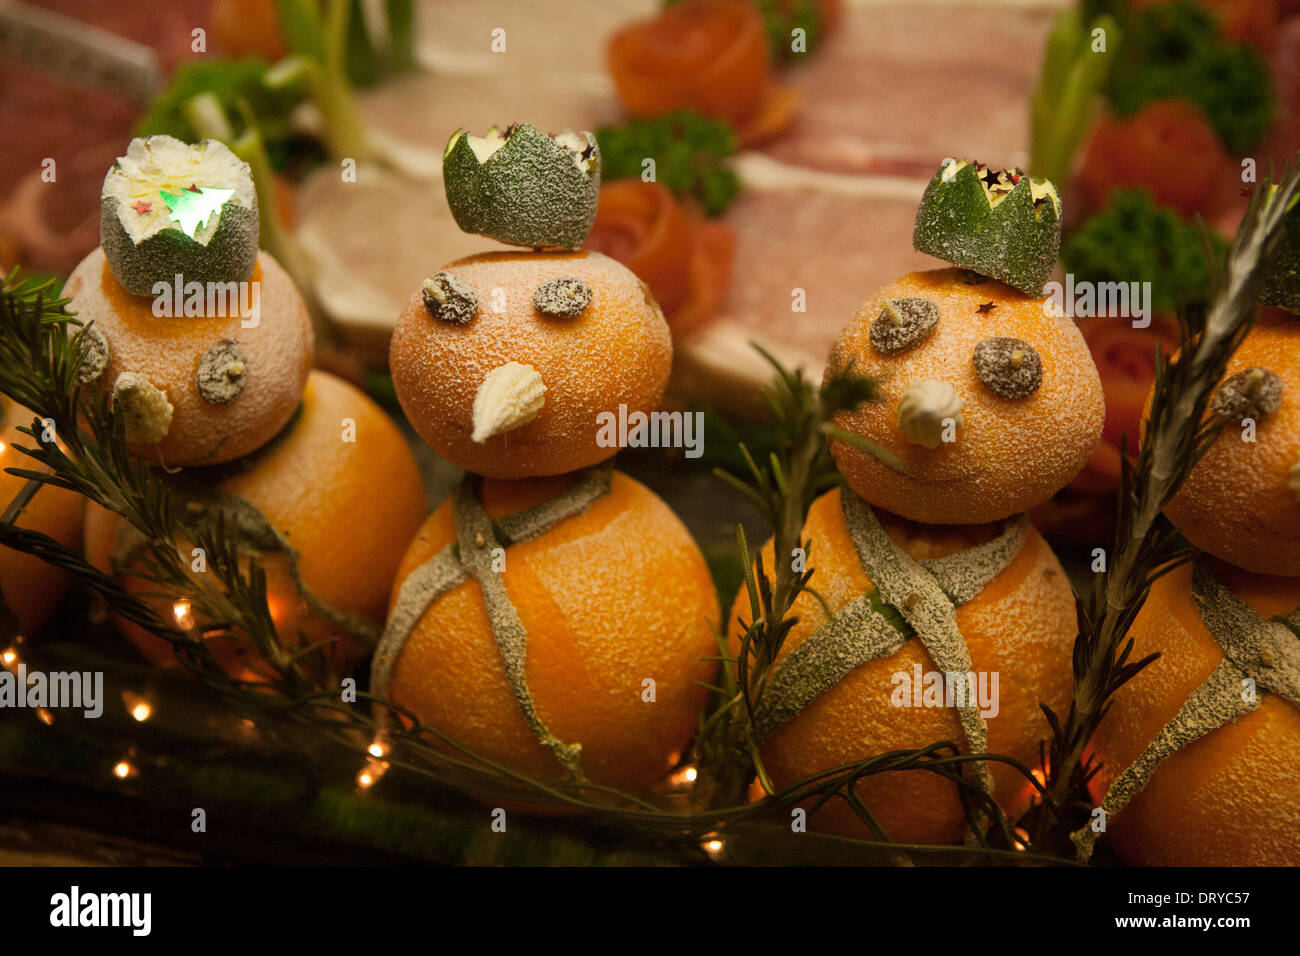 Un affichage de vitrine bouchers de bonhommes fait d'oranges, une variété de viande affiche derrière. Banque D'Images